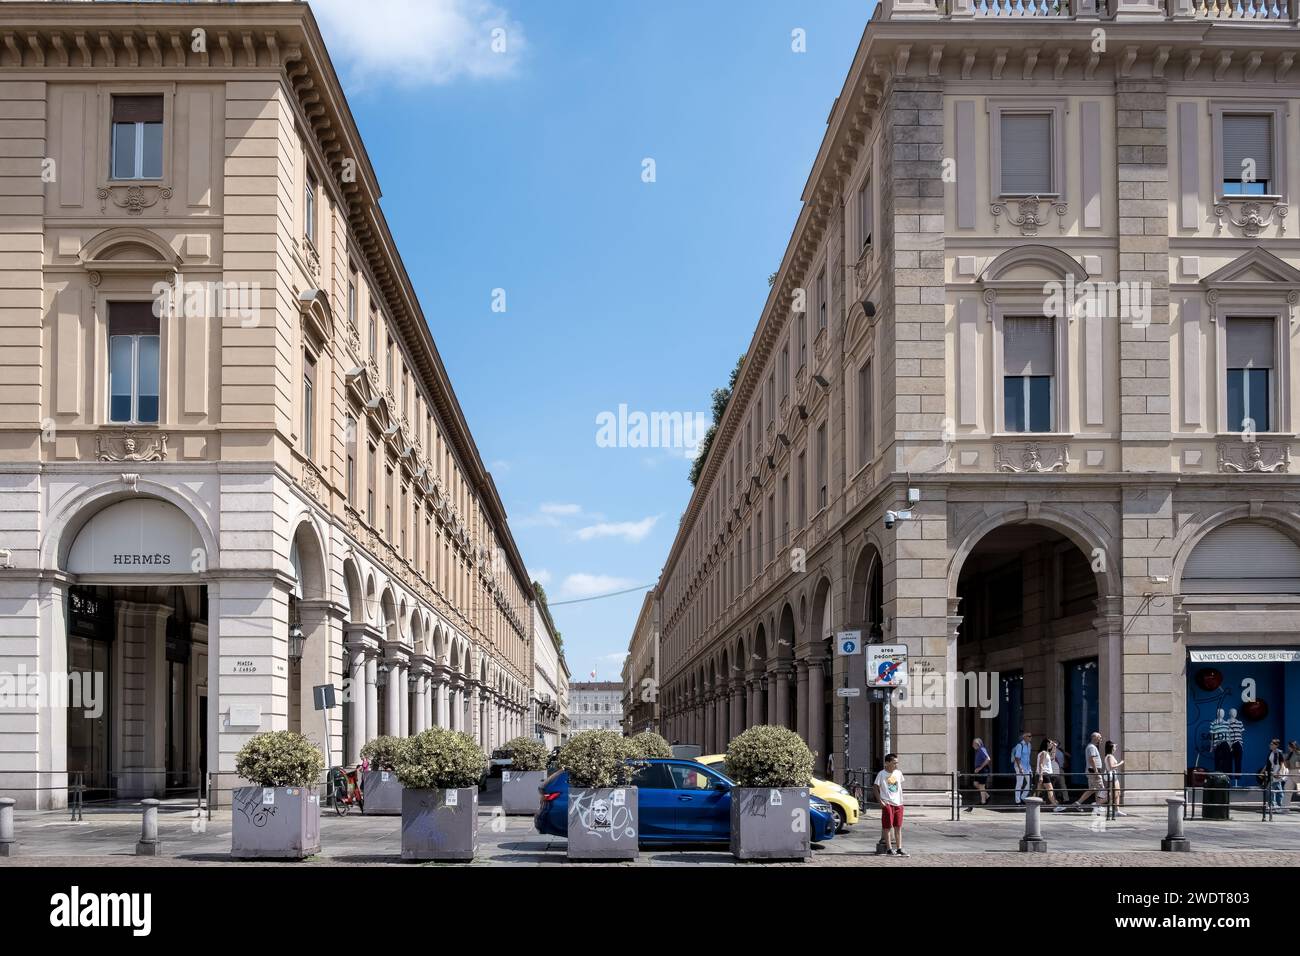 Vista di via Roma, un'iconica strada dello shopping con negozi di lusso, da Piazza San Carlo, una piazza rinomata per la sua architettura barocca, Torino Foto Stock